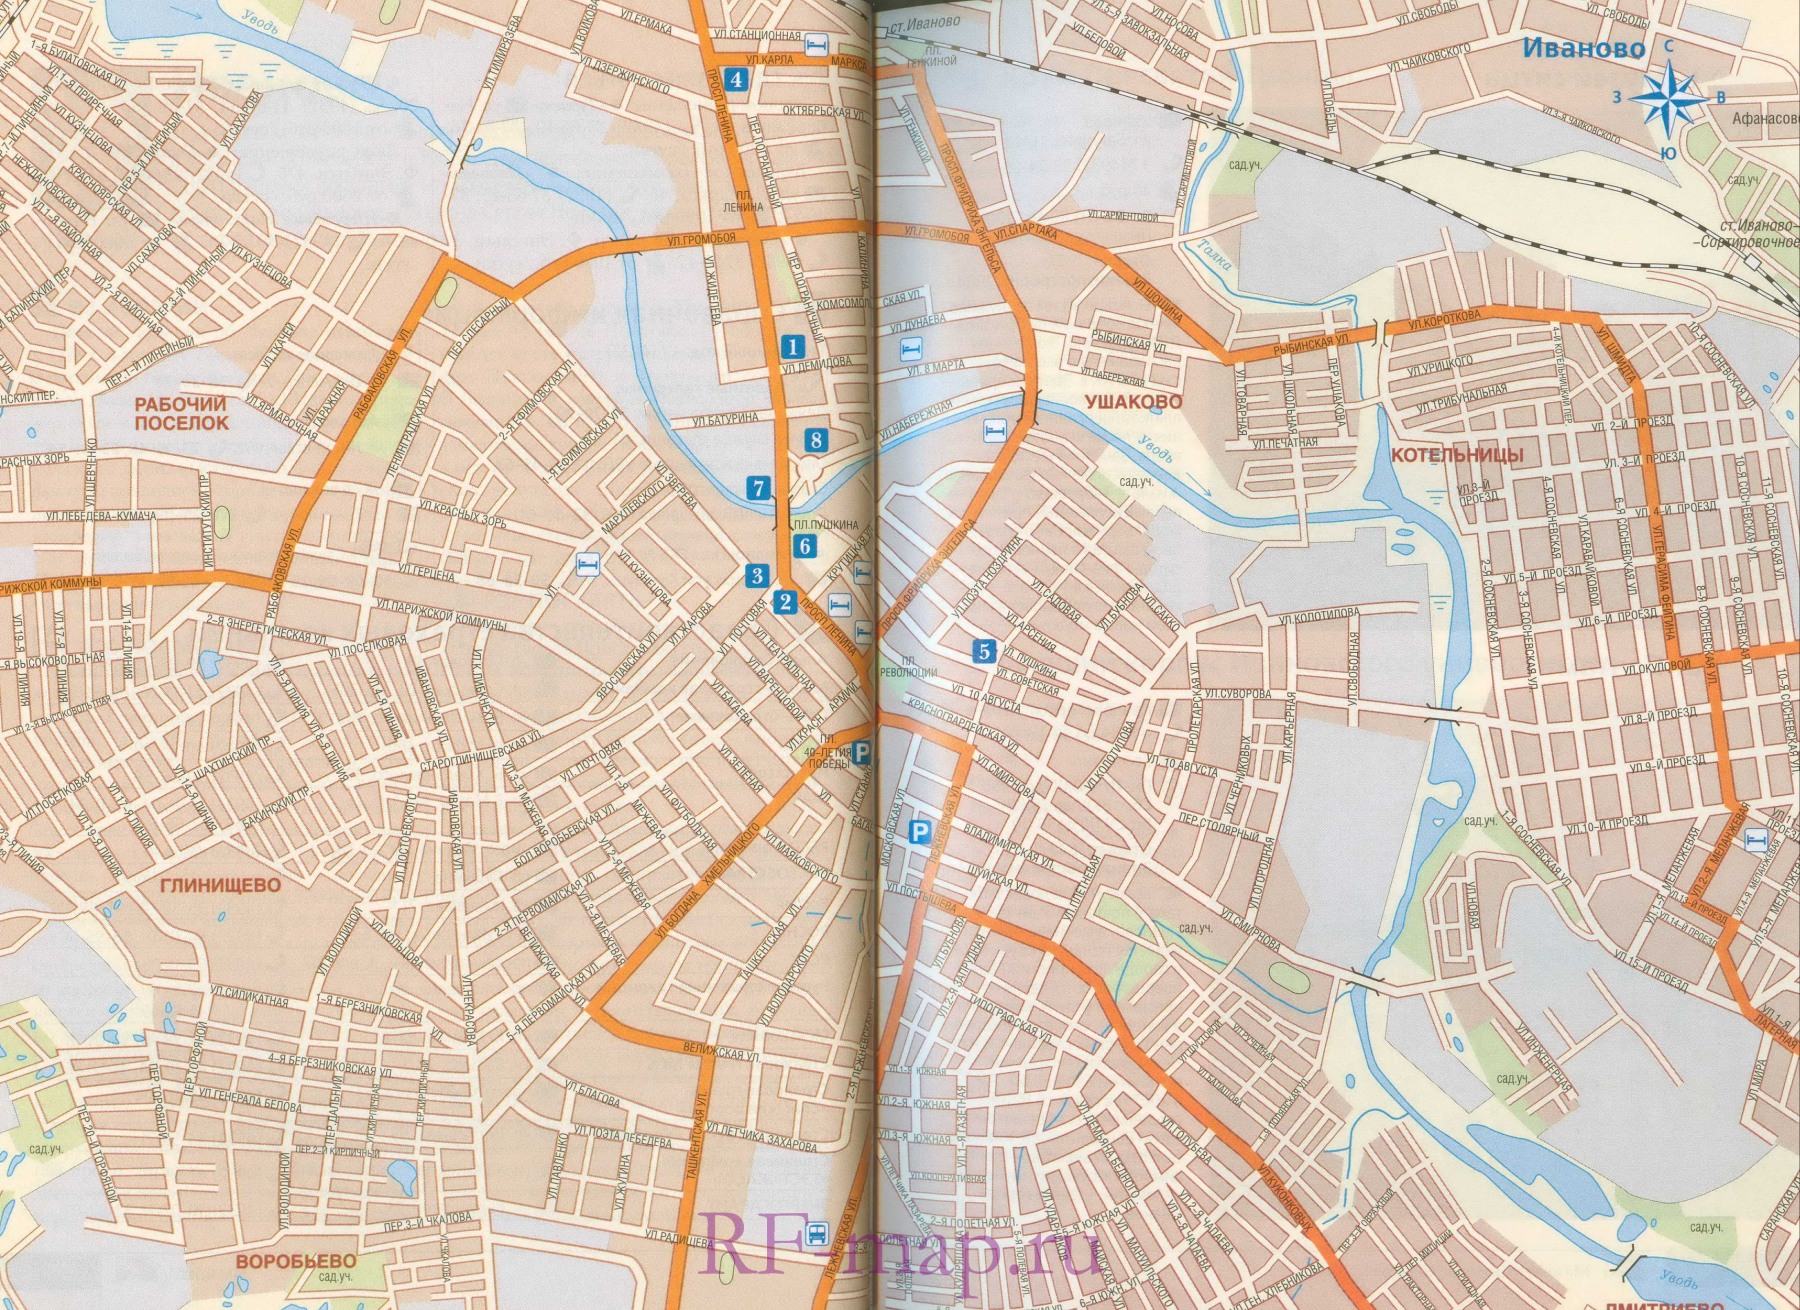 Автомобильная карта Иваново. Карта улиц г Иваново со схемой транзитного проезда автотранспорта, A0 - 